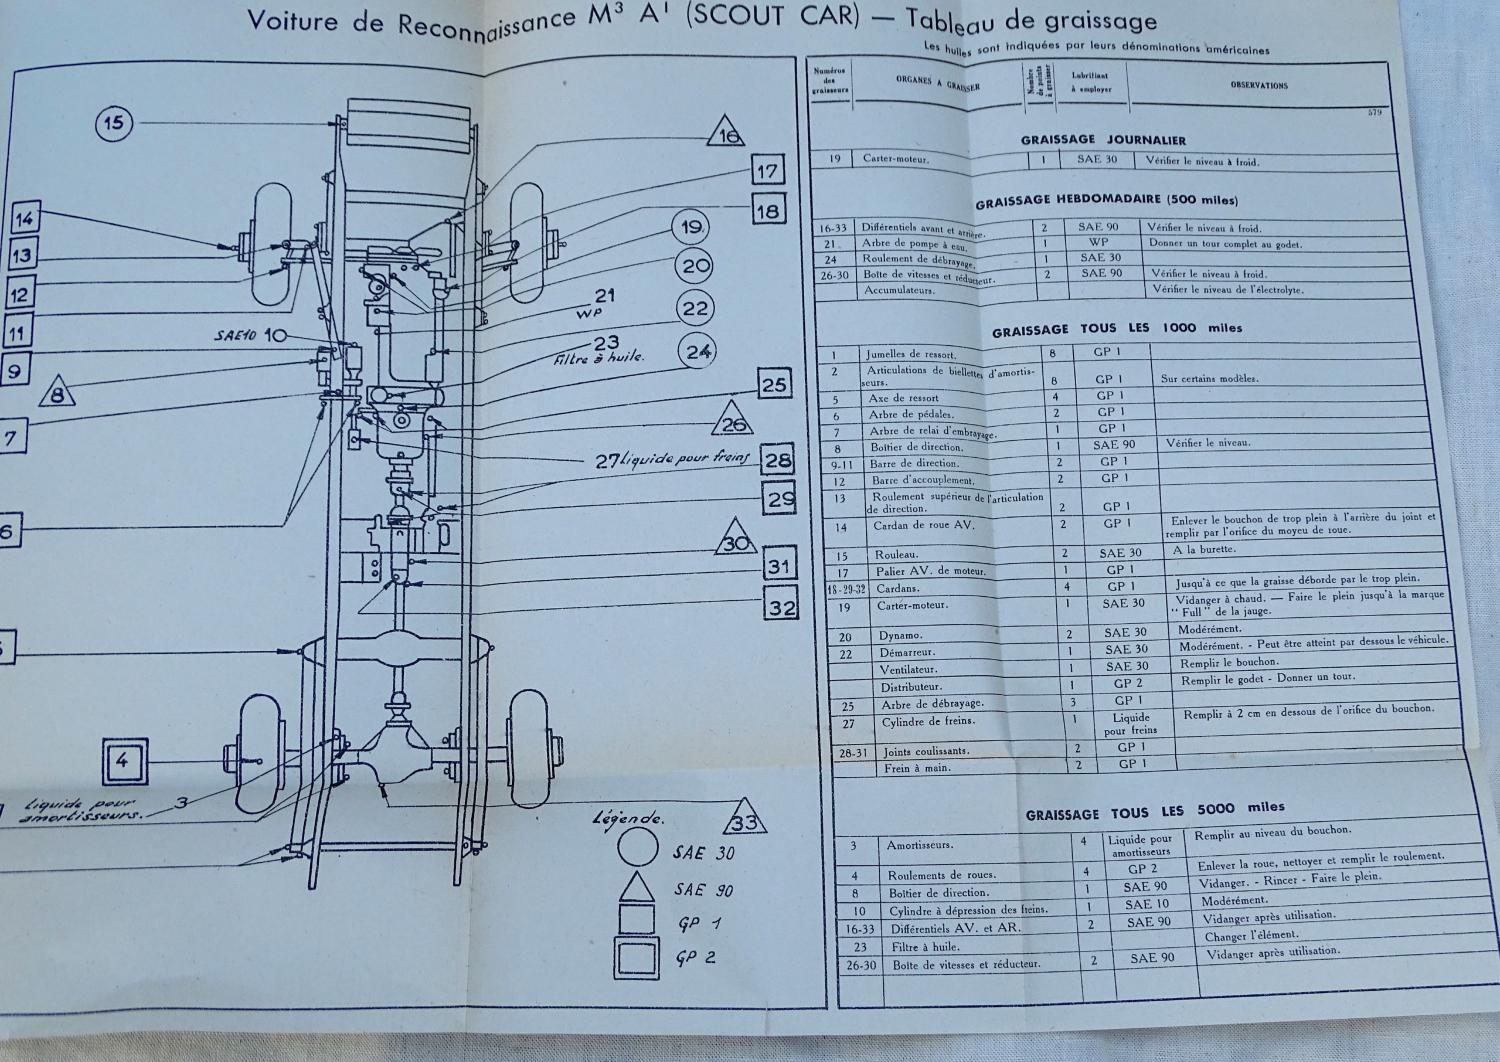 Guide d&#039;entretien Voiture de reconnaissance M3A1 Scout Car  Etat-Major de l&#039;Arm&eacute;e 1950